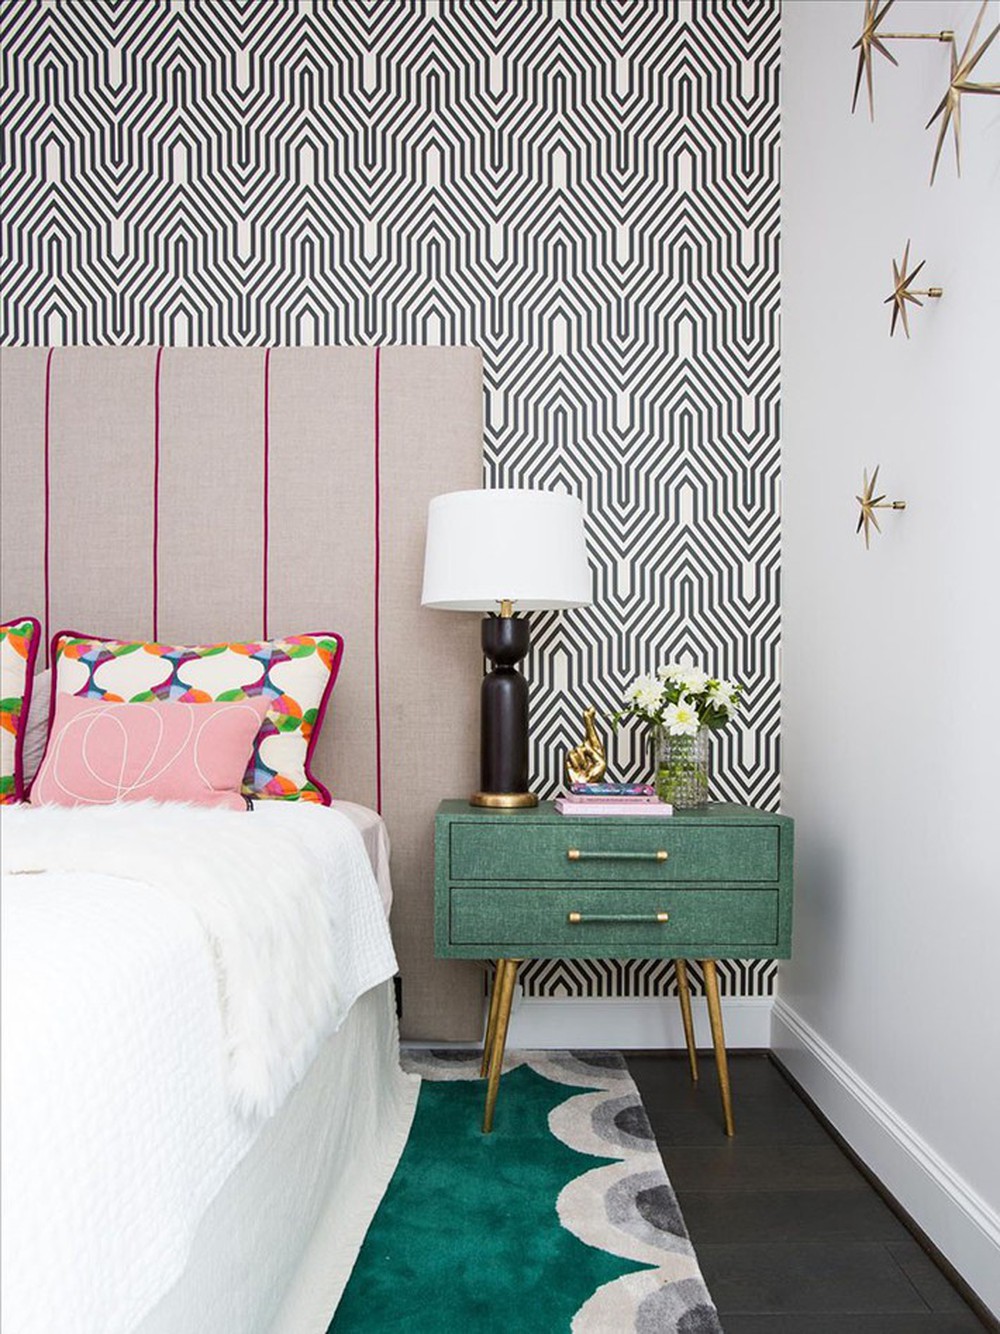 Những cách trang trí phòng ngủ giúp không gian nghỉ ngơi của bạn đẹp chẳng kém trên tạp chí - Ảnh 3.